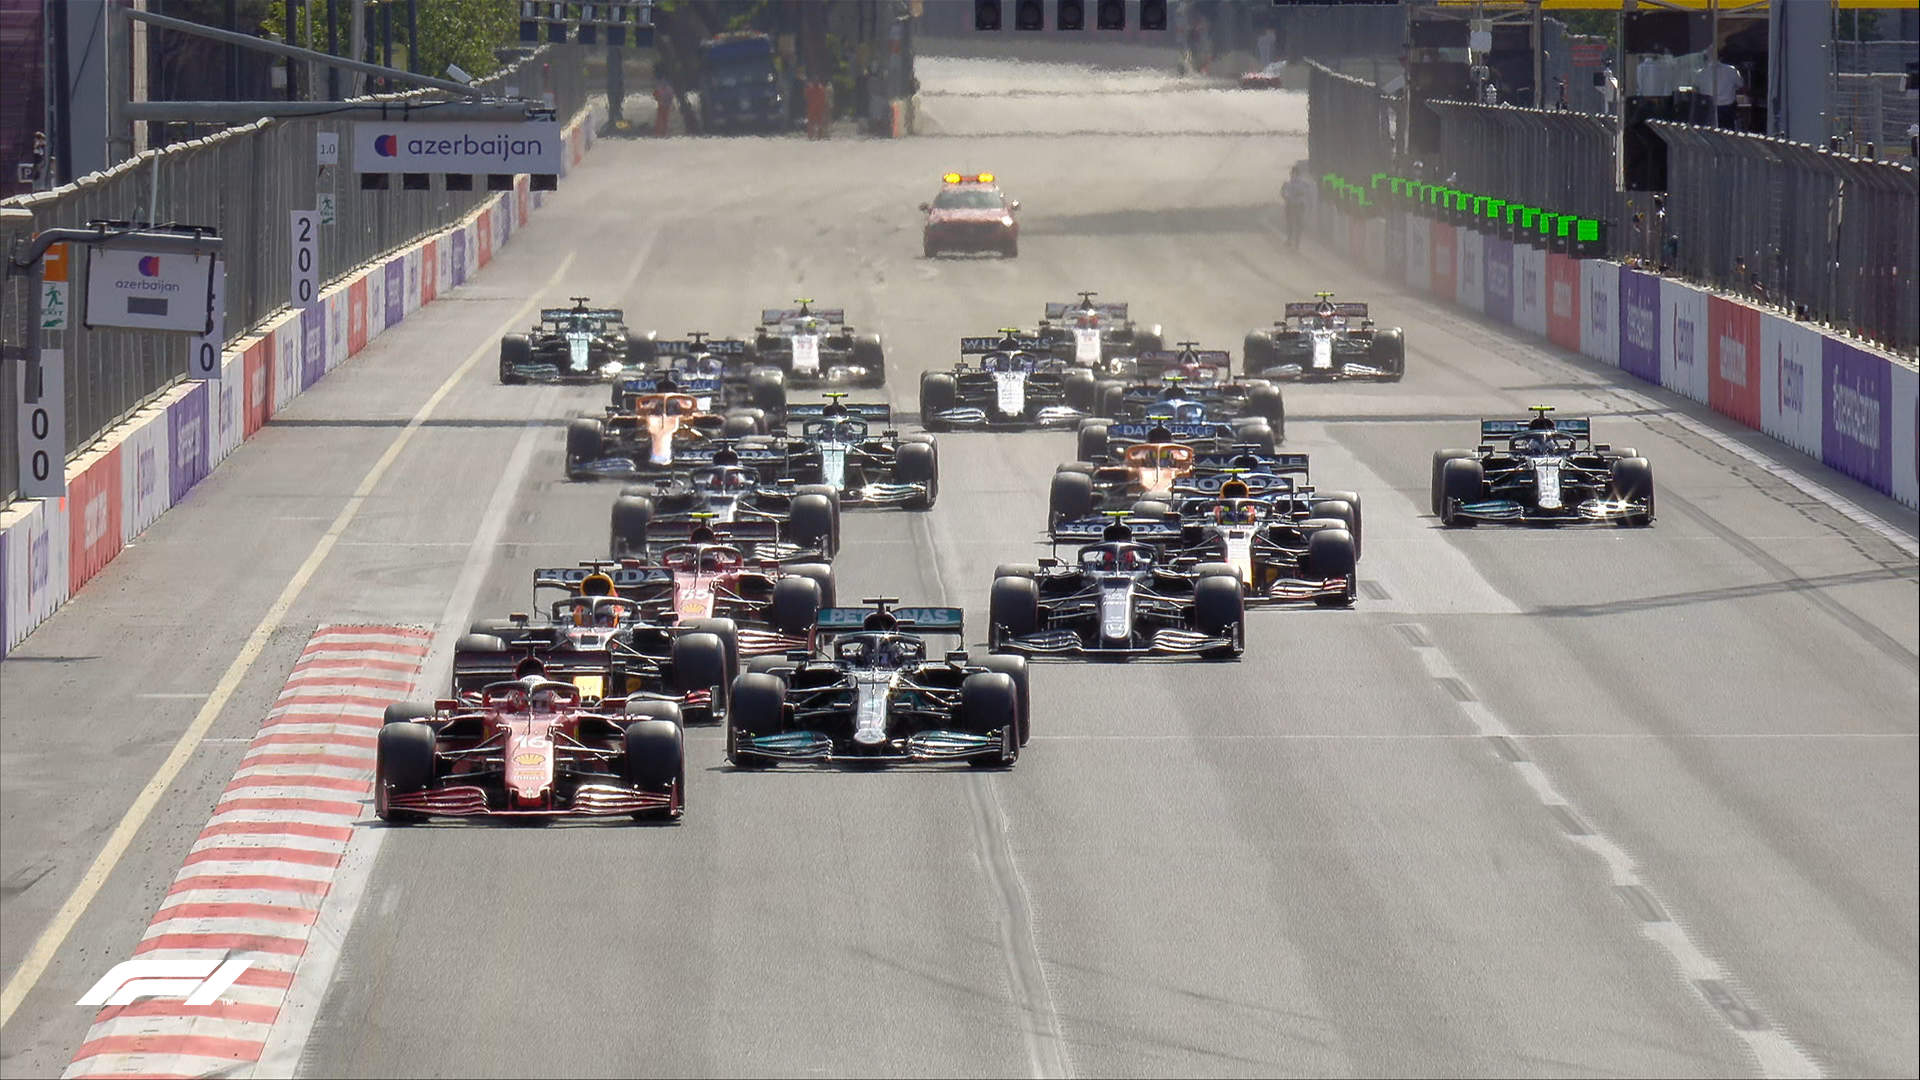 F1 GP Azerbaijan Akhir Pekan Ini: Balapan Di Jalan Raya Kota Baku